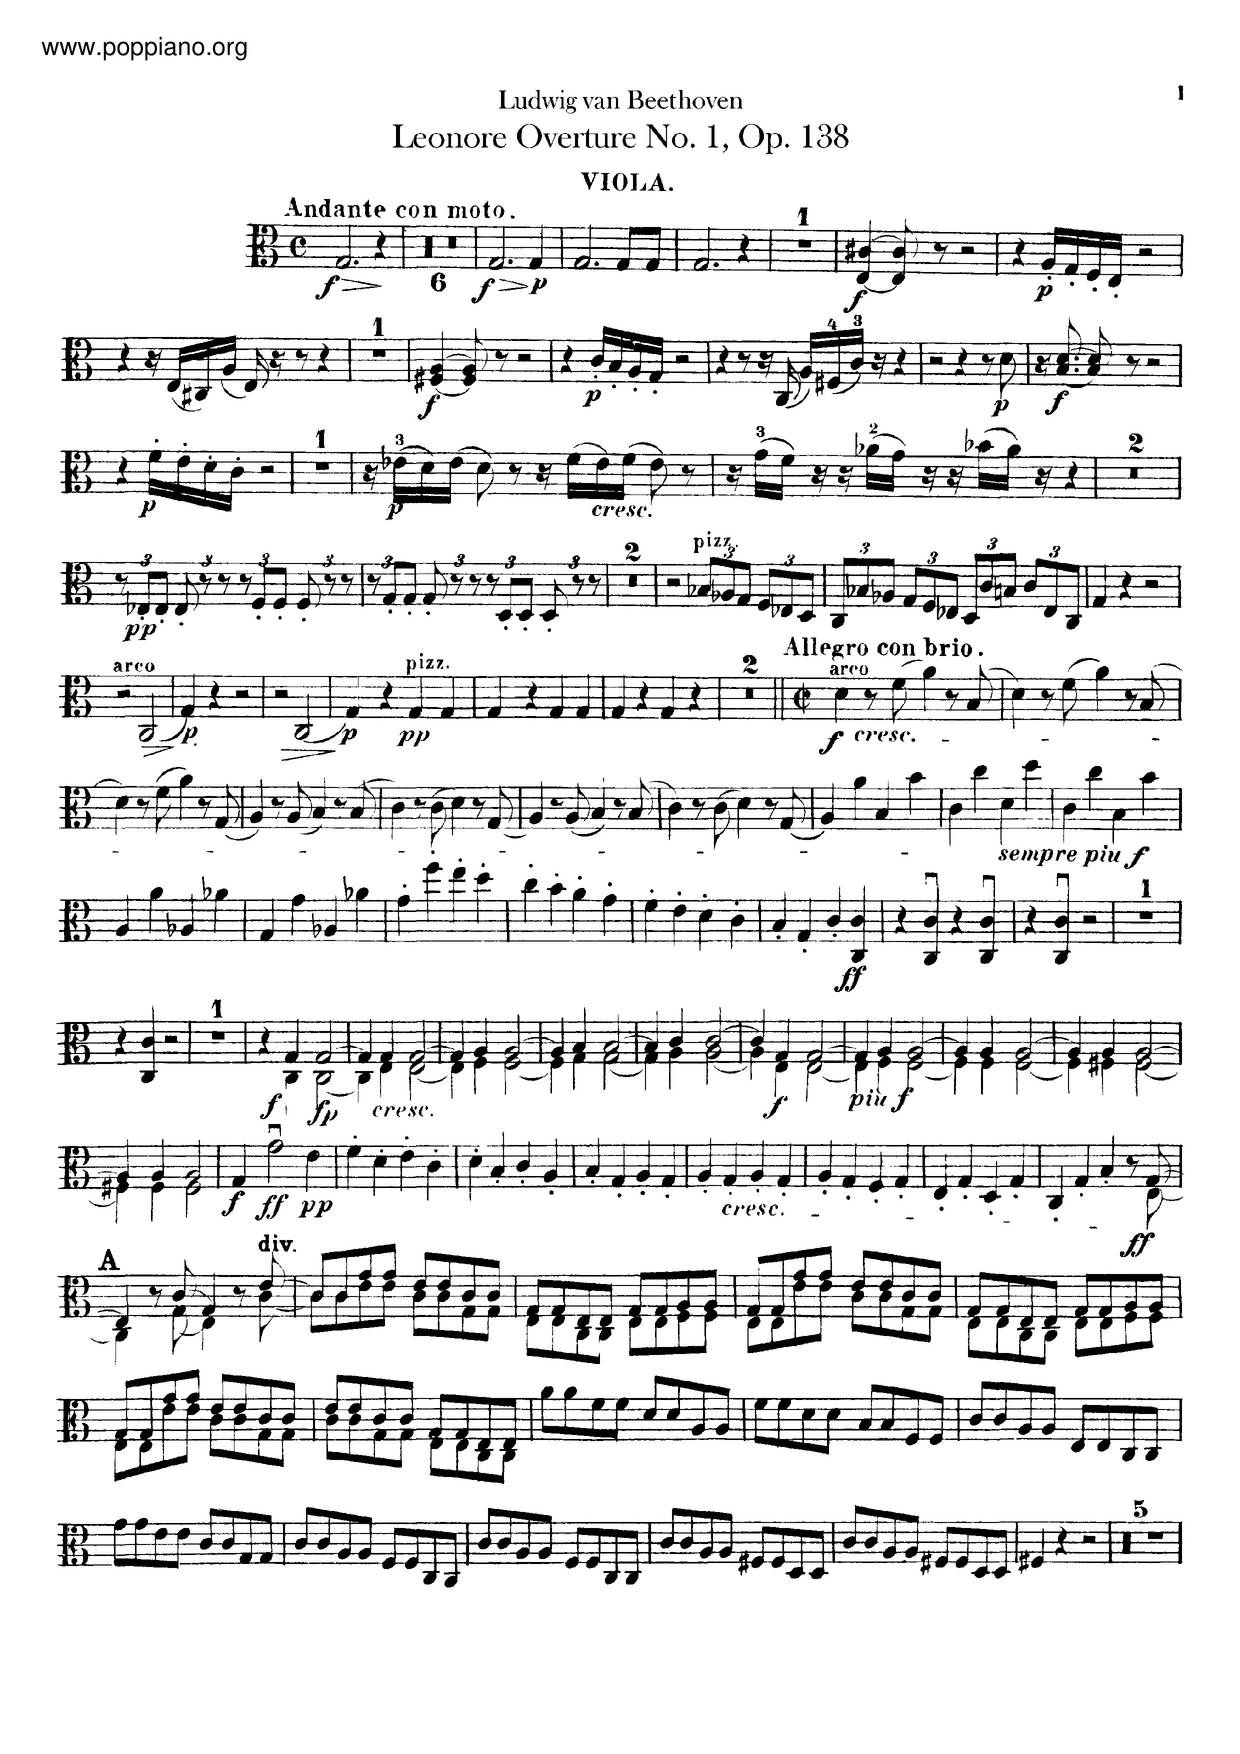 Leonore Overture No. 1, Op. 138ピアノ譜